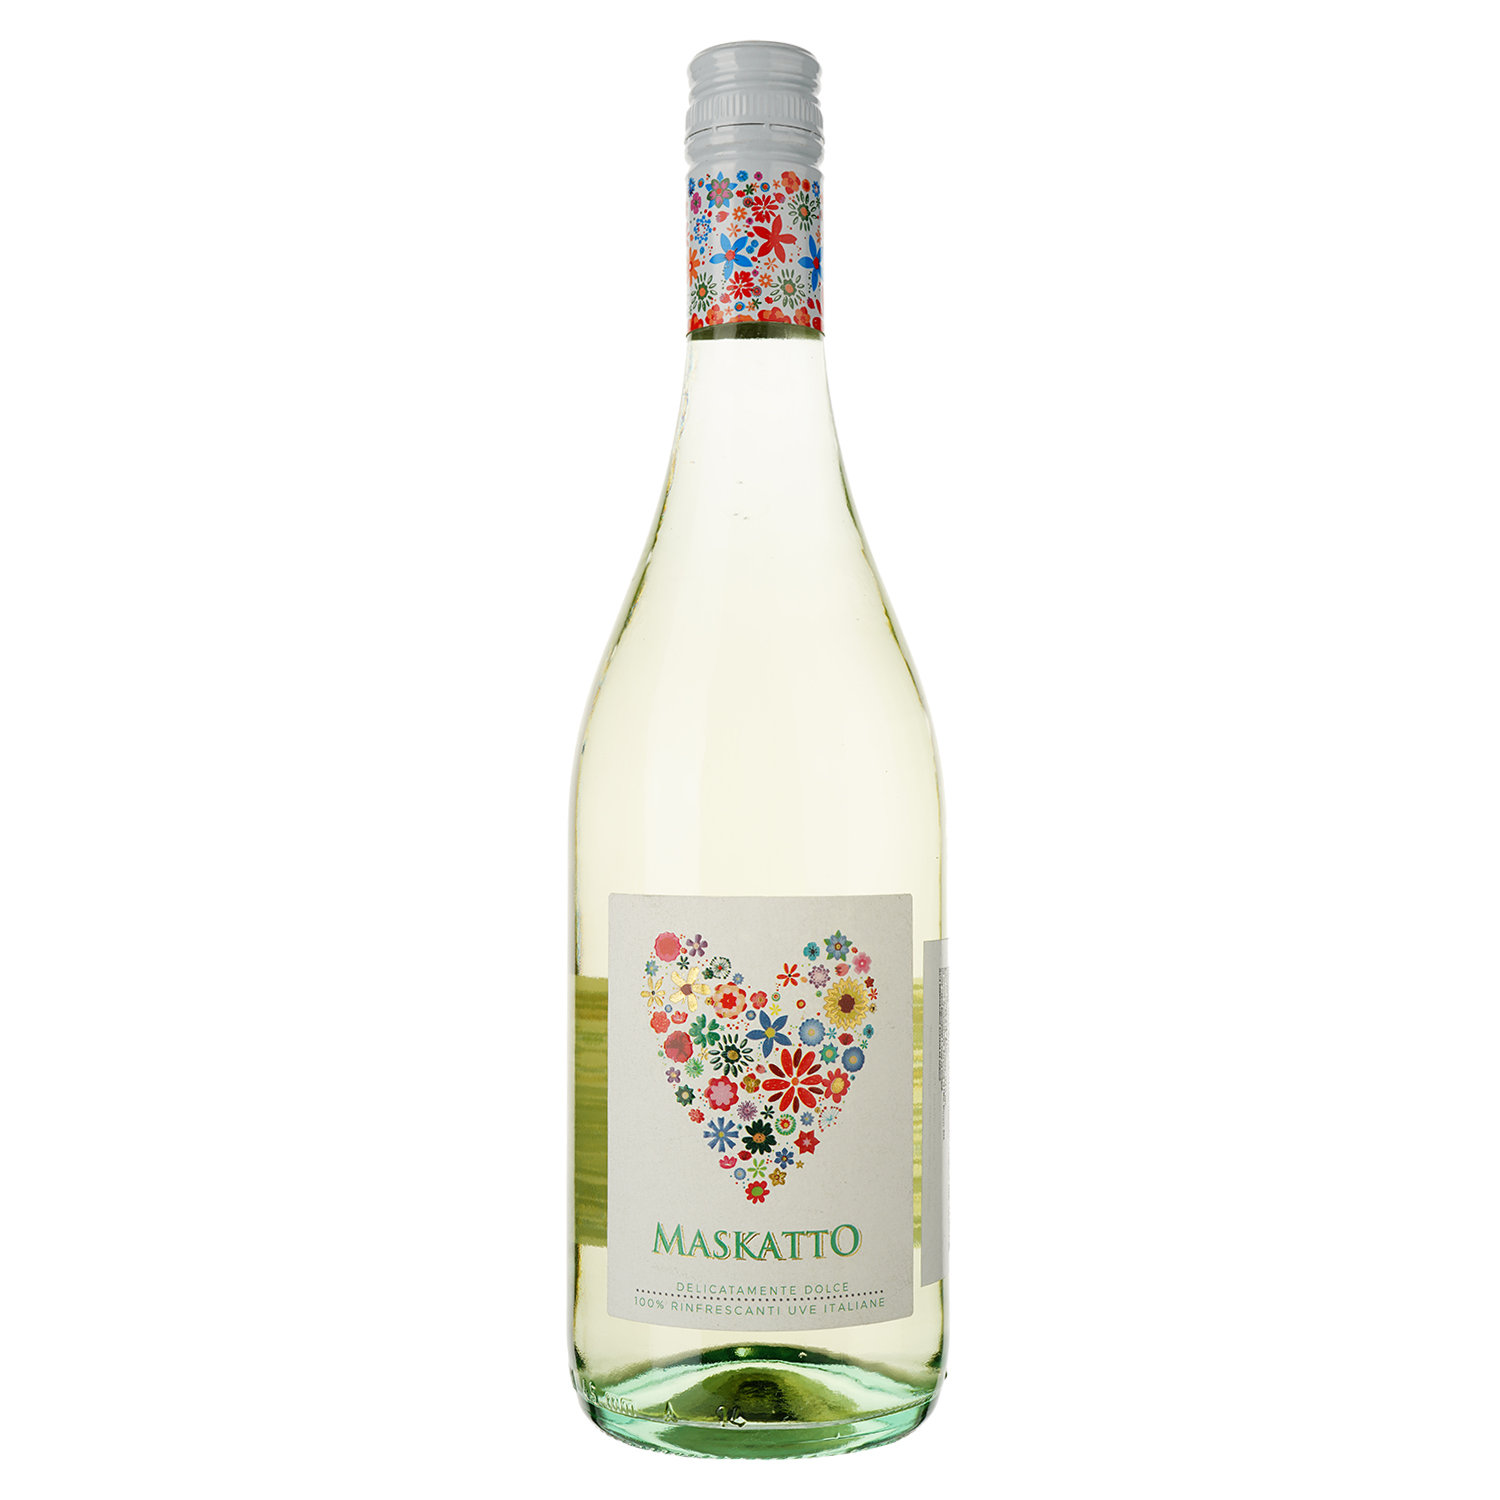 Вино Maskatto MPF Bianco, белое, сладкое, 0,75 л - фото 1